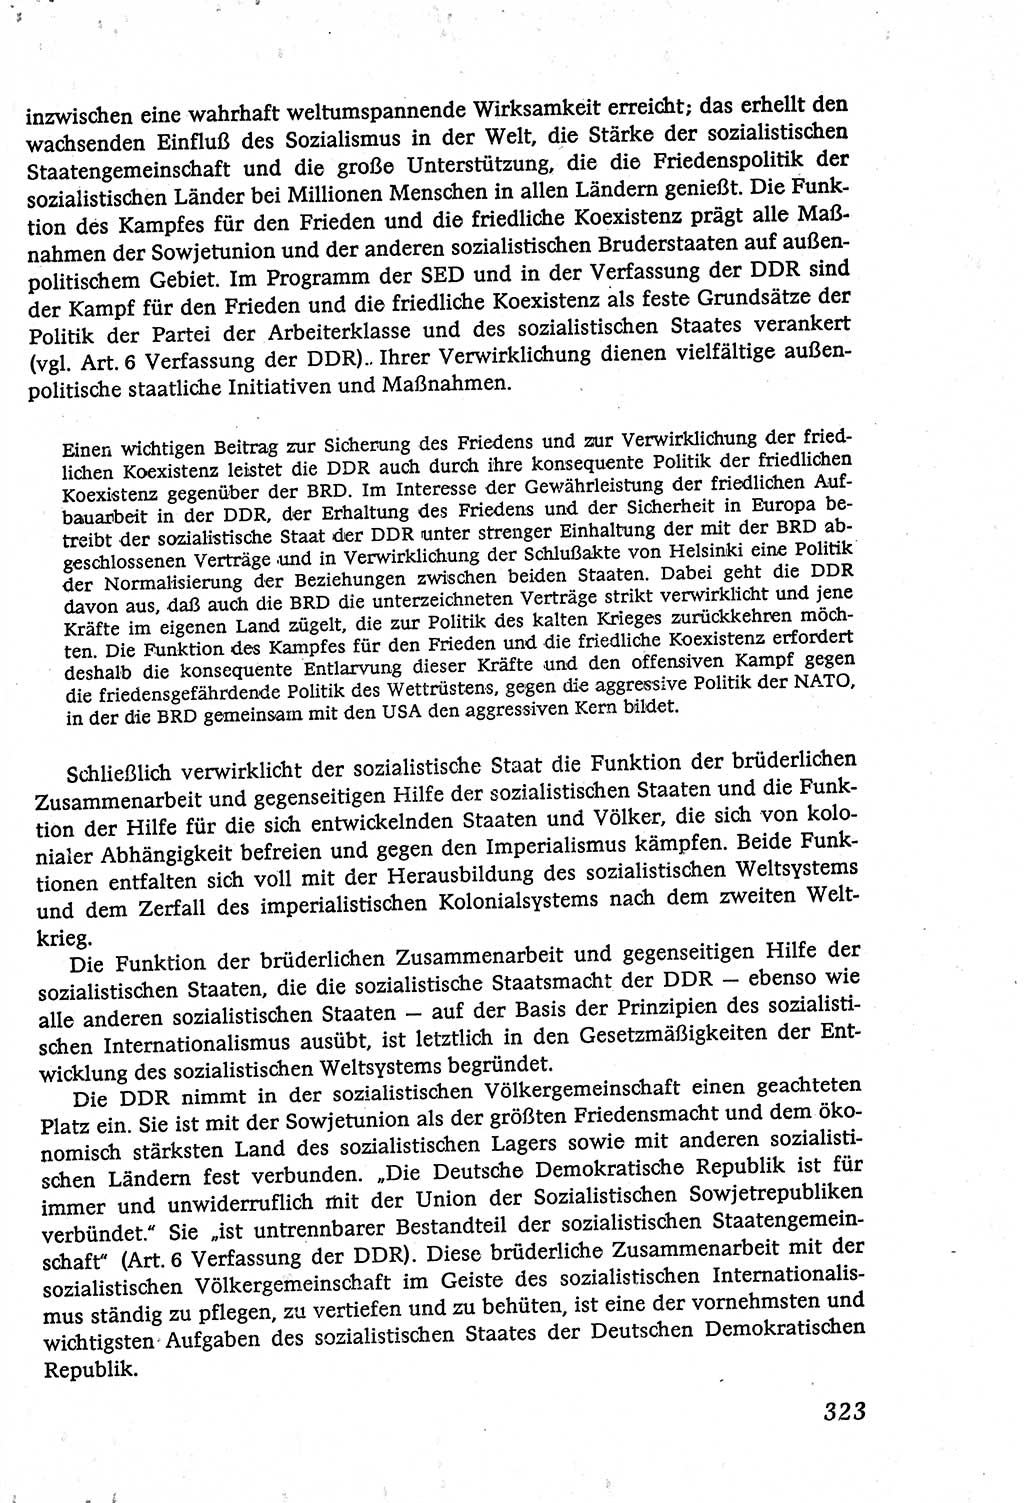 Marxistisch-leninistische (ML) Staats- und Rechtstheorie [Deutsche Demokratische Republik (DDR)], Lehrbuch 1980, Seite 323 (ML St.-R.-Th. DDR Lb. 1980, S. 323)